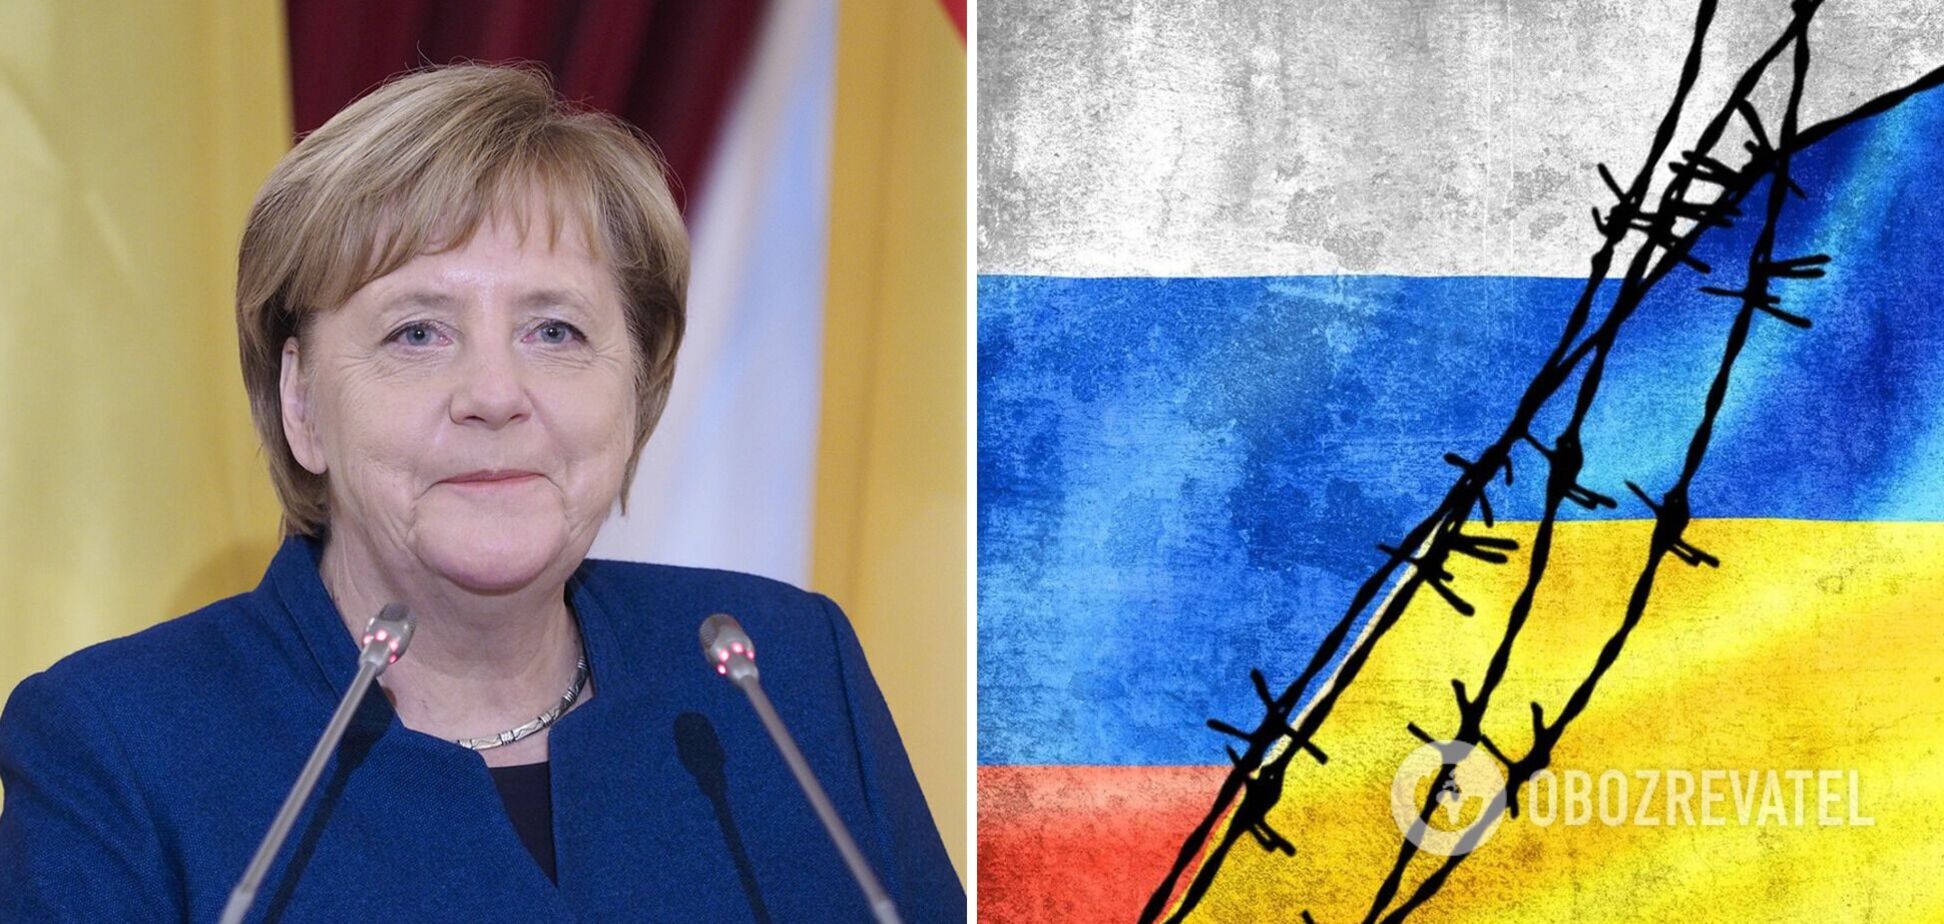 Меркель захотела стать посредником в переговорах Украины с Путиным